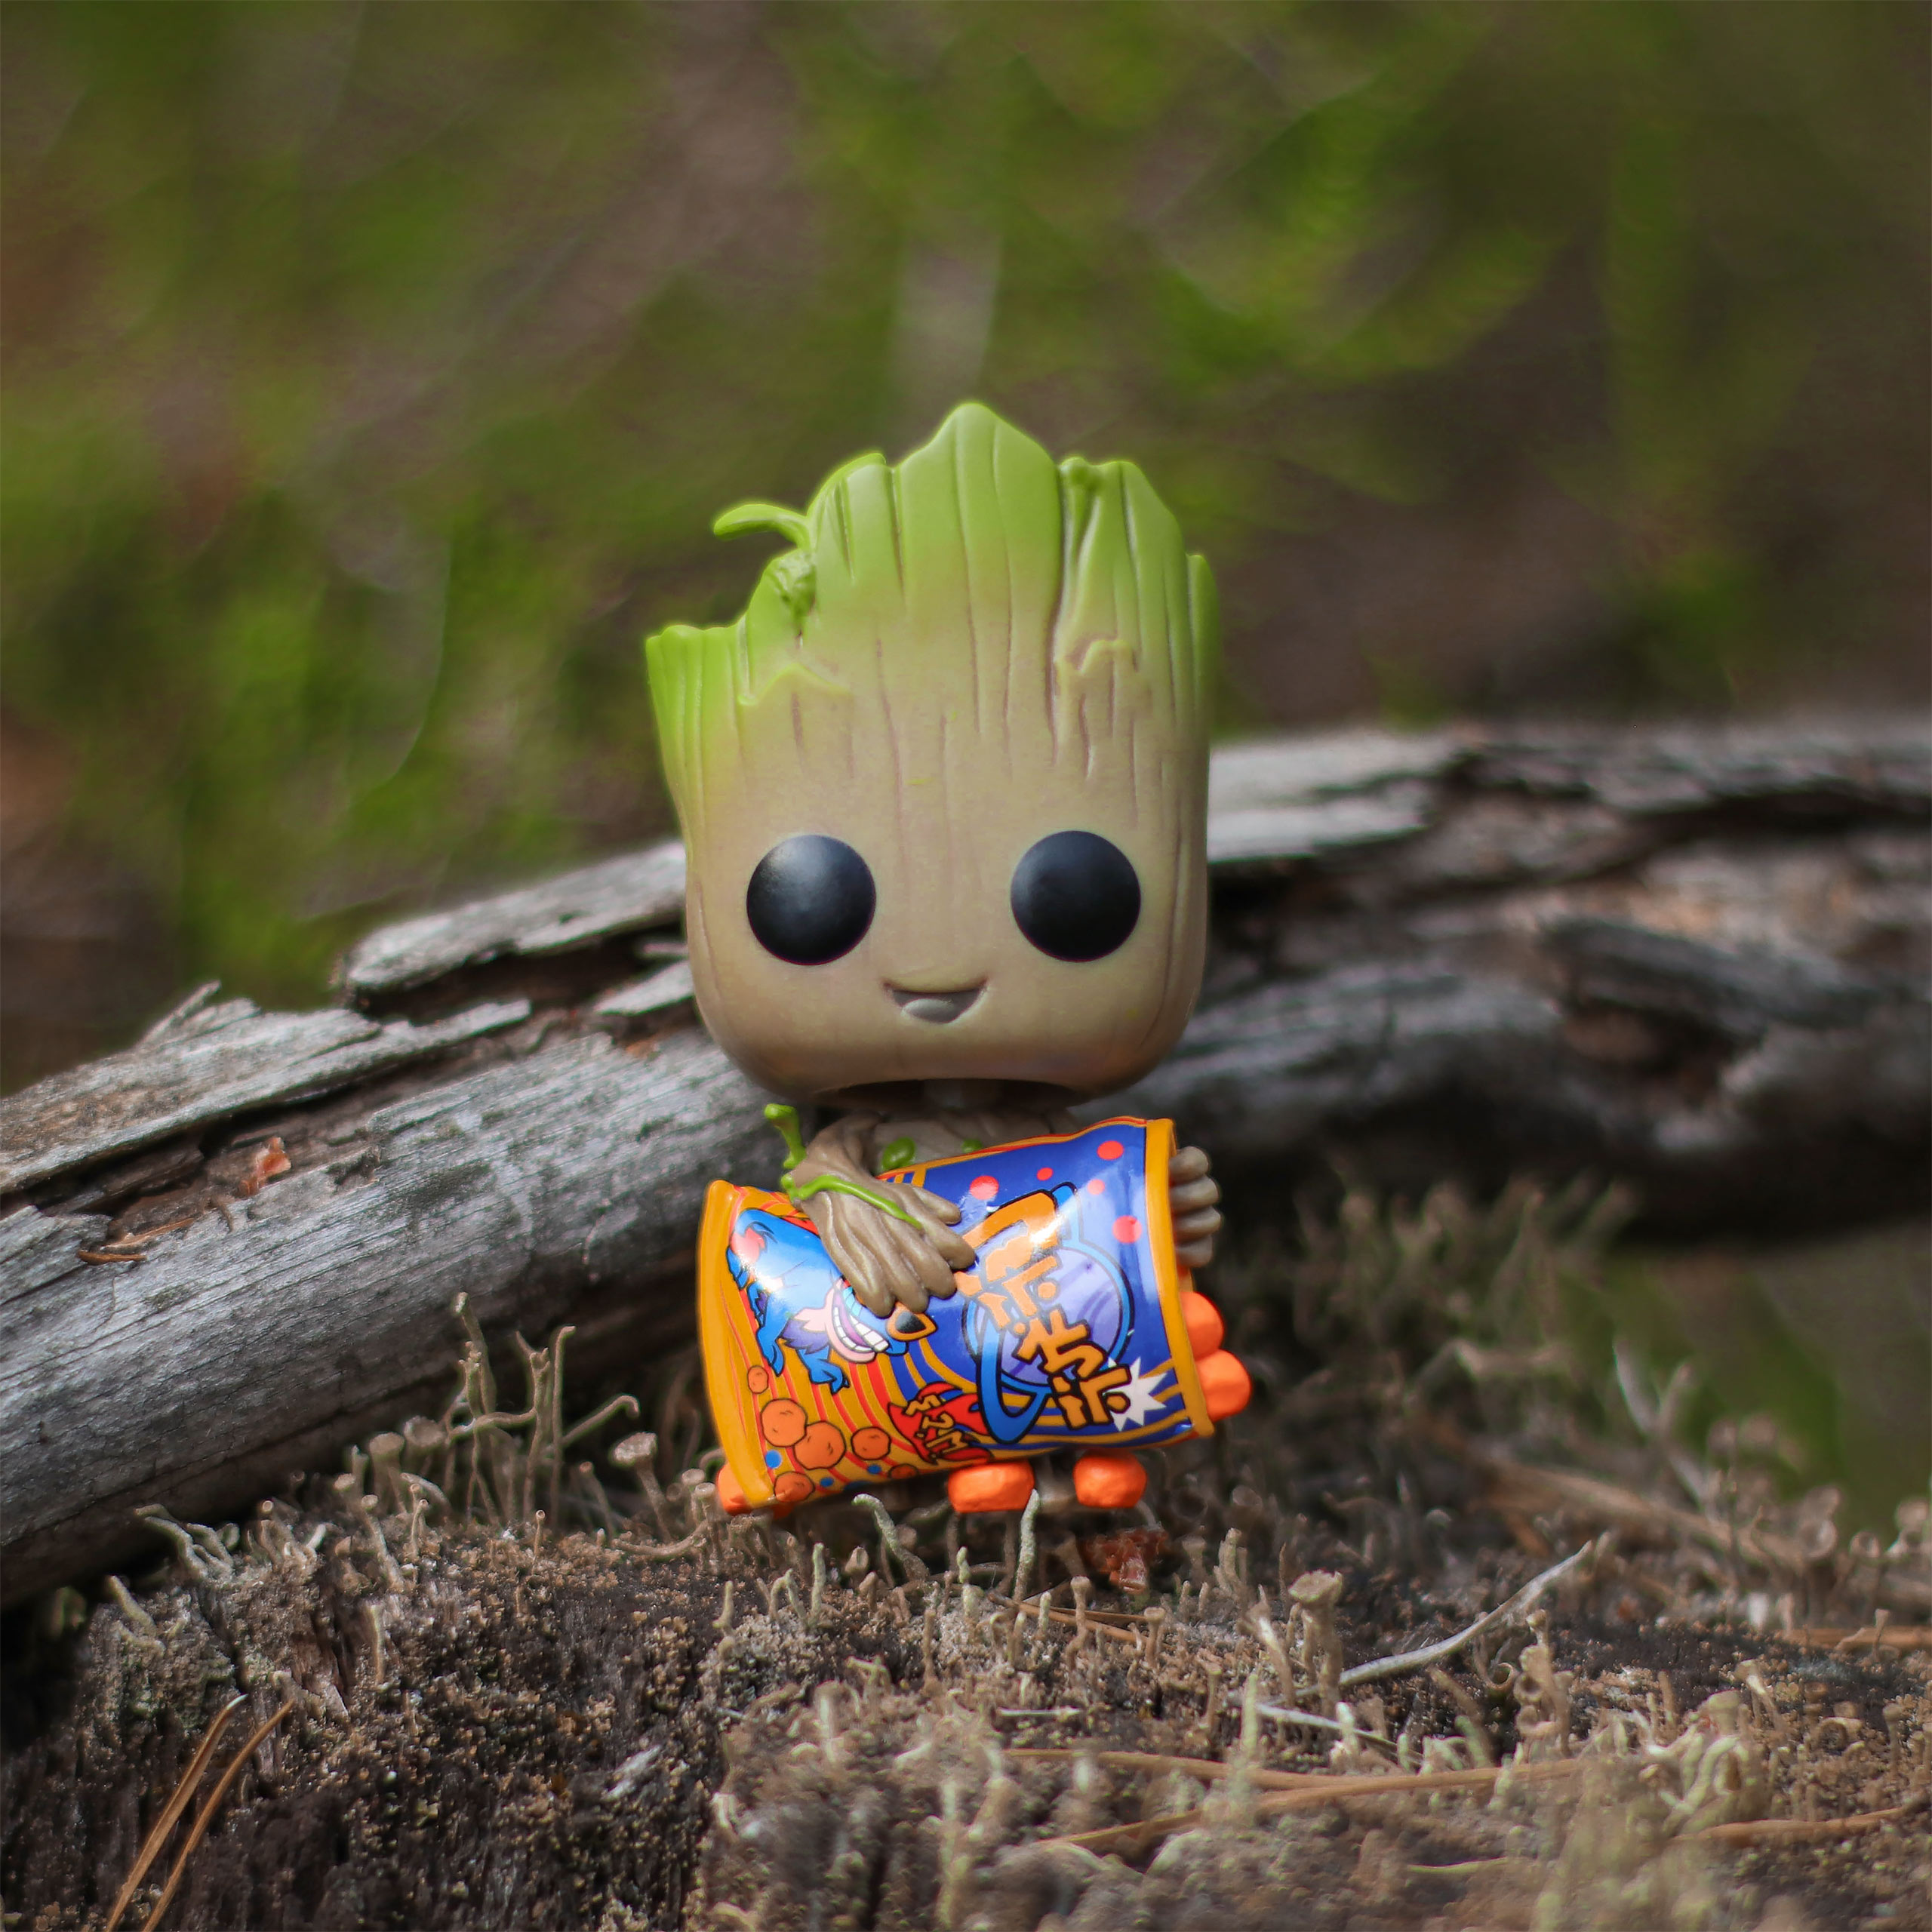 I Am Groot - Groot mit Käsebällchen Funko Pop Wackelkopf-Figur